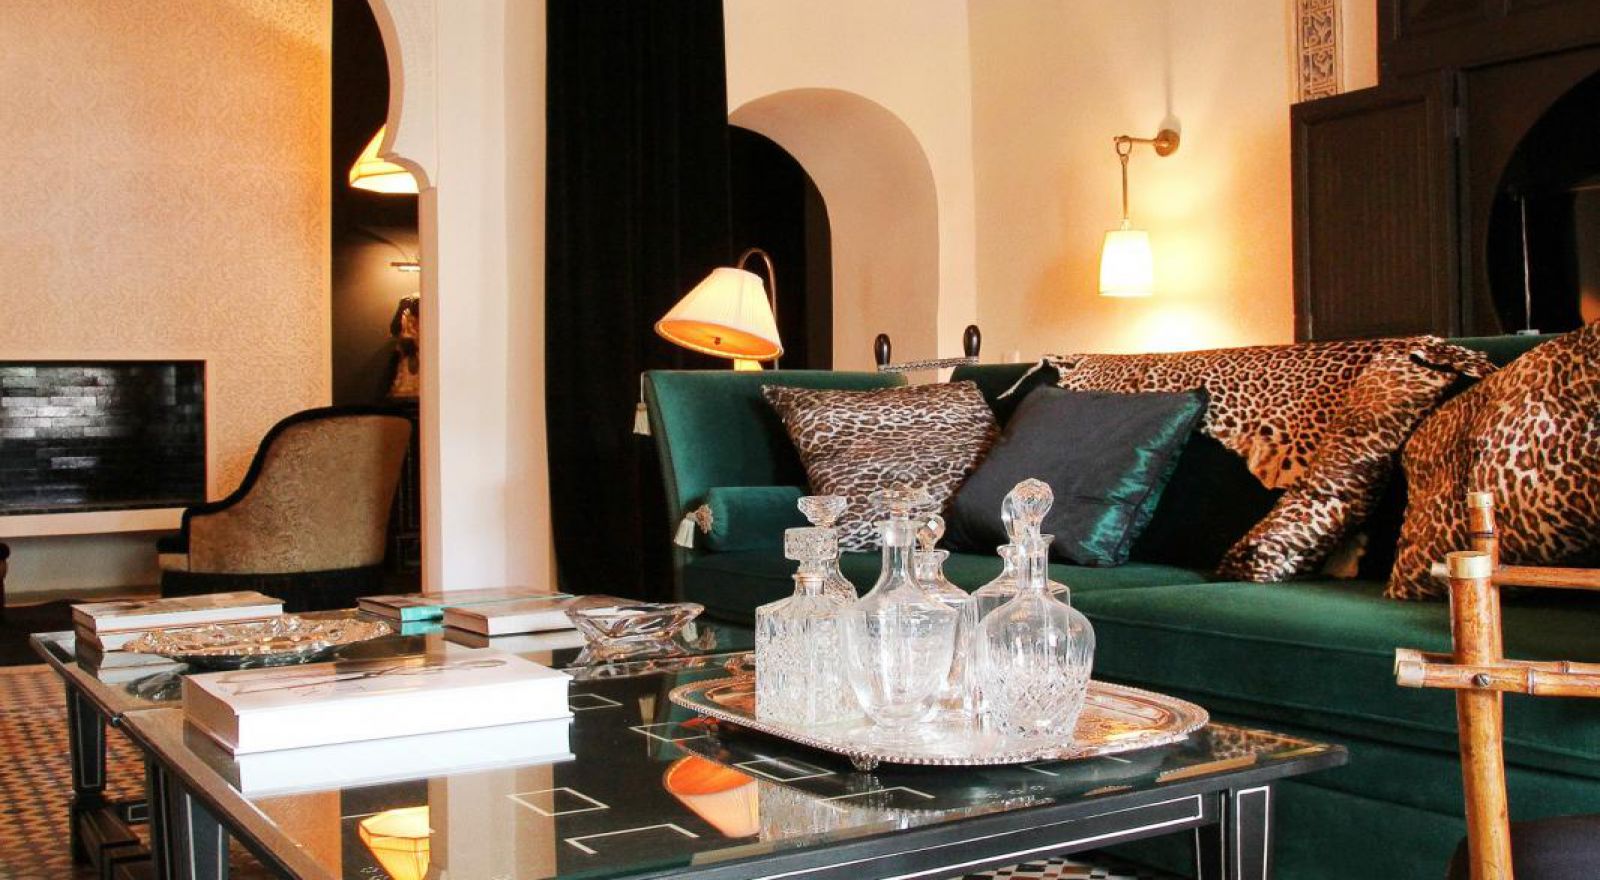 Un tres grands palais de charme dans la Medina de Marrakech, 5 minutes à pied de l'hôtel El Fna Place Jamaa, cette Riad de luxe accueille ses clients avec d'excellentes installations et services de